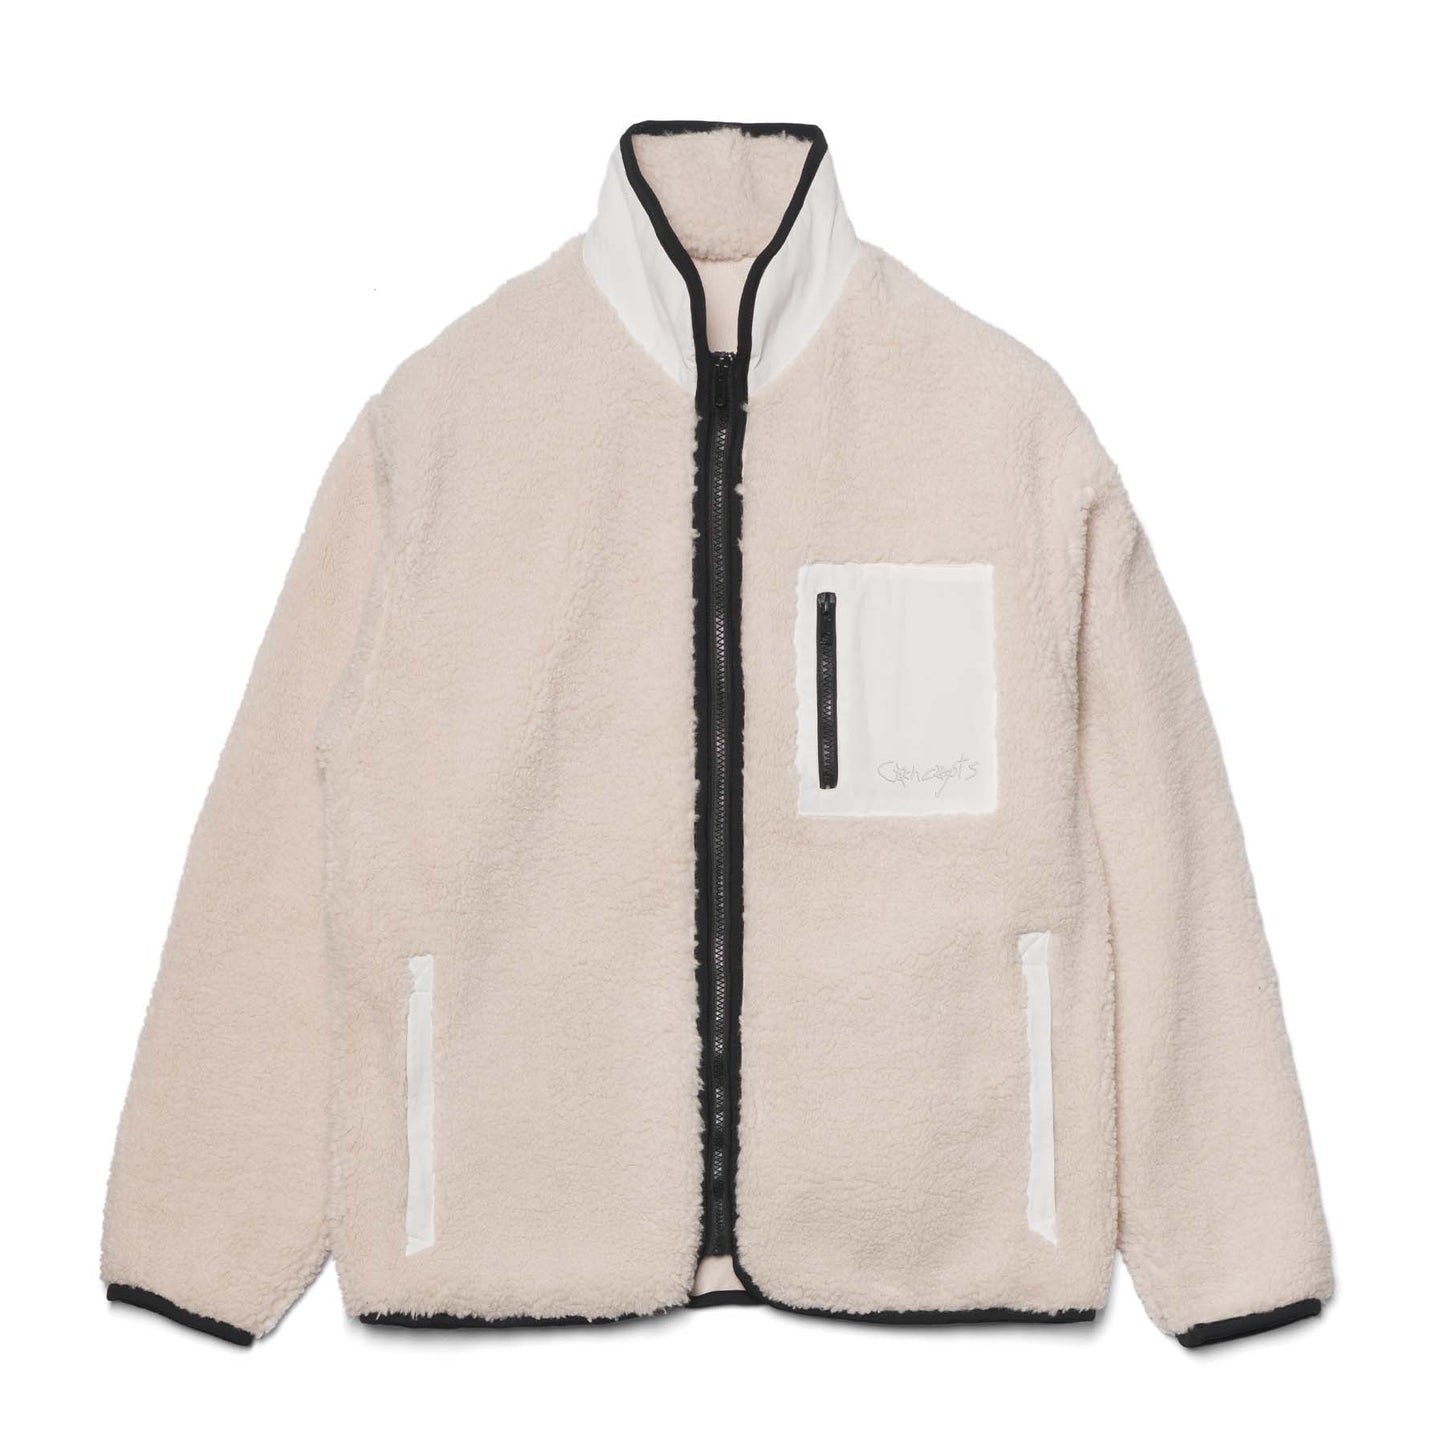 Concepts Polar Fleece Jacket (Off-White)